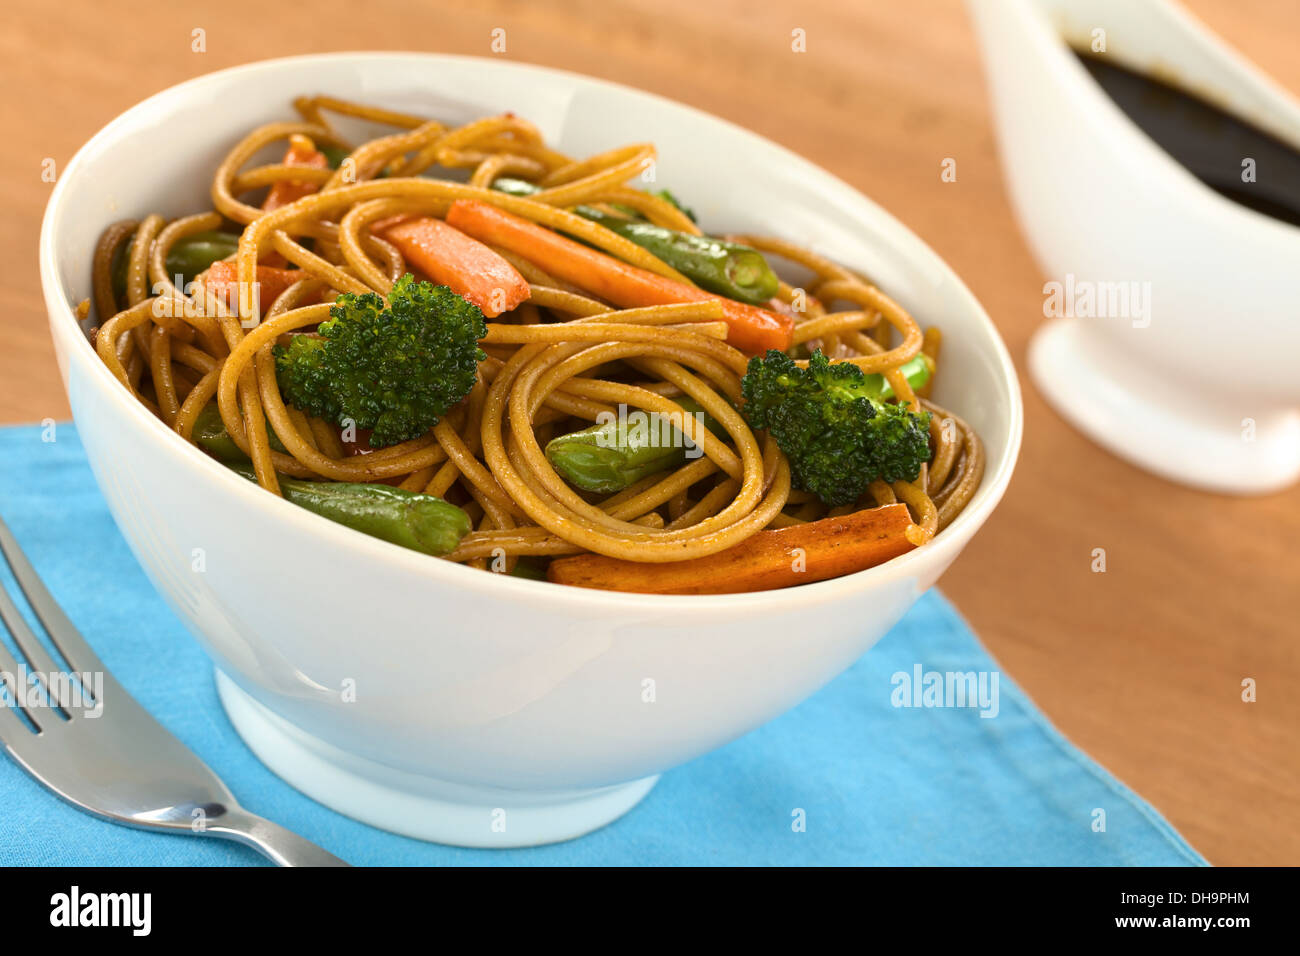 Espagueti integral y vegetales salteados en tazón blanco con salsa de soja en la espalda Foto de stock